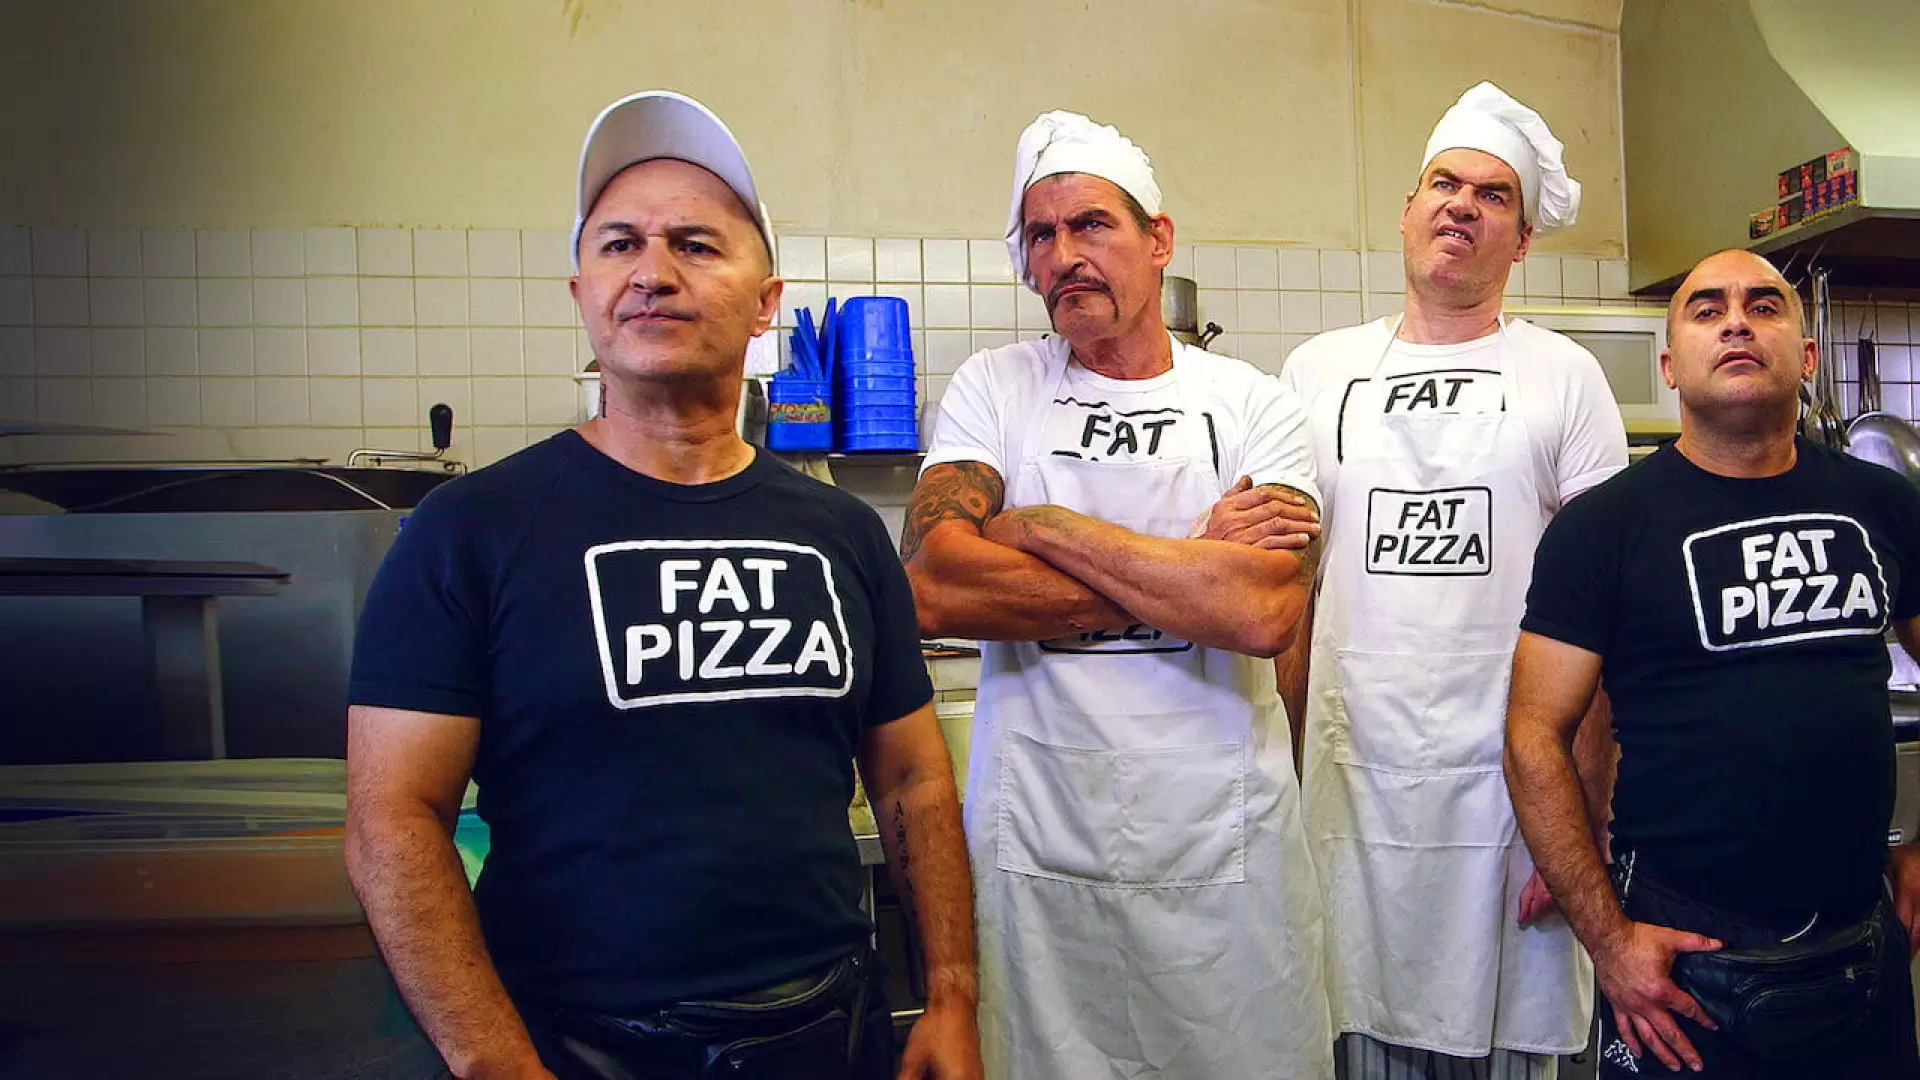 دانلود فیلم Fat Pizza vs. Housos 2014